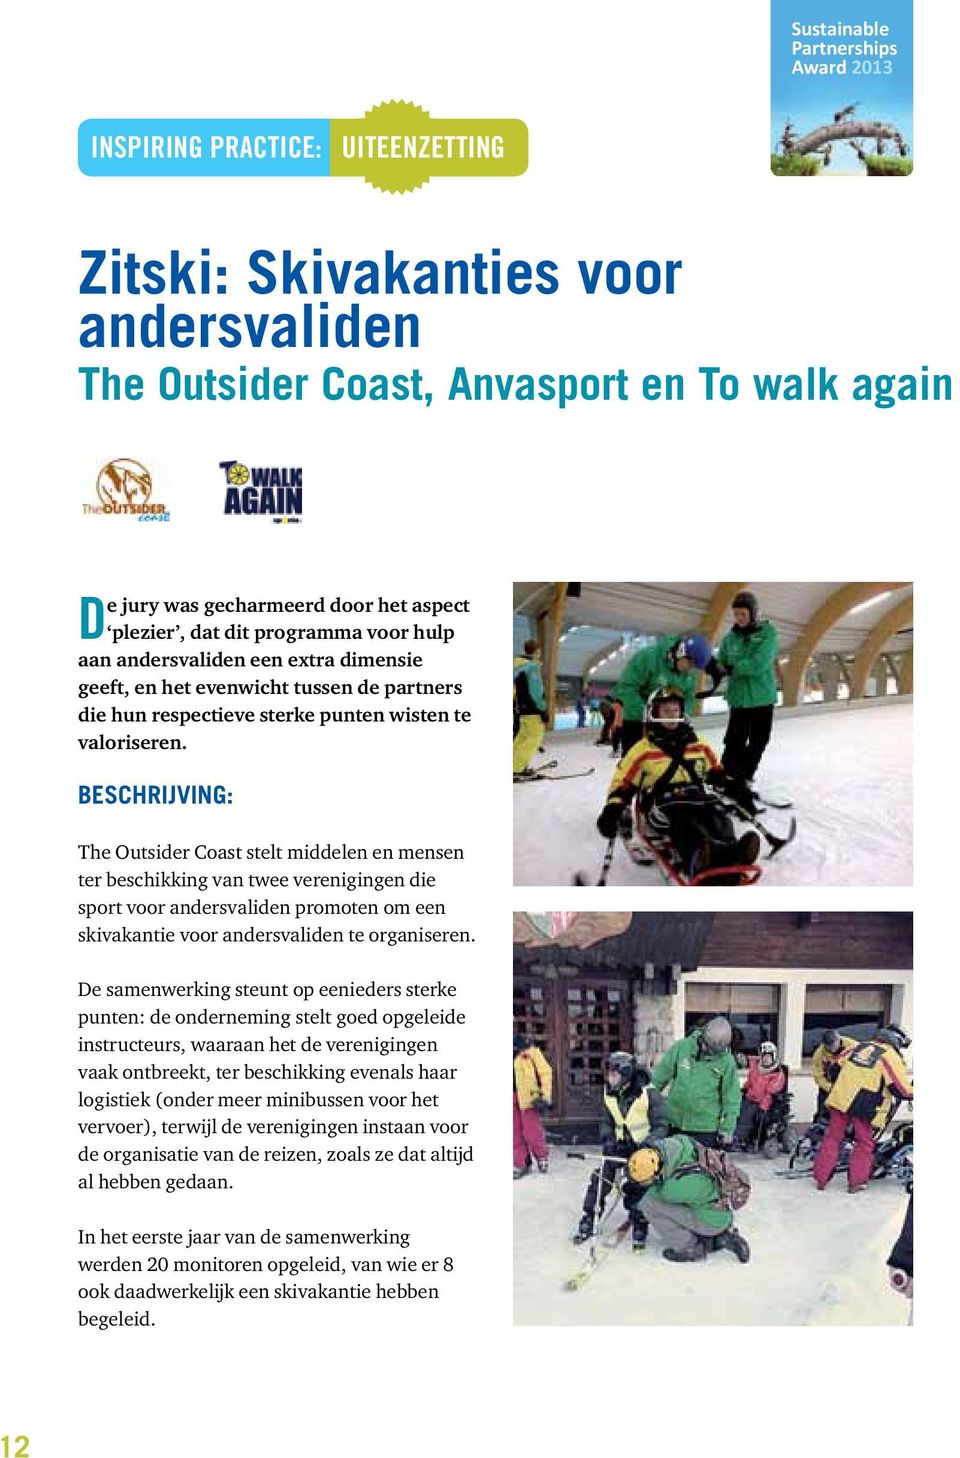 Beschrijving: The Outsider Coast stelt middelen en mensen ter beschikking van twee verenigingen die sport voor andersvaliden promoten om een skivakantie voor andersvaliden te organiseren.